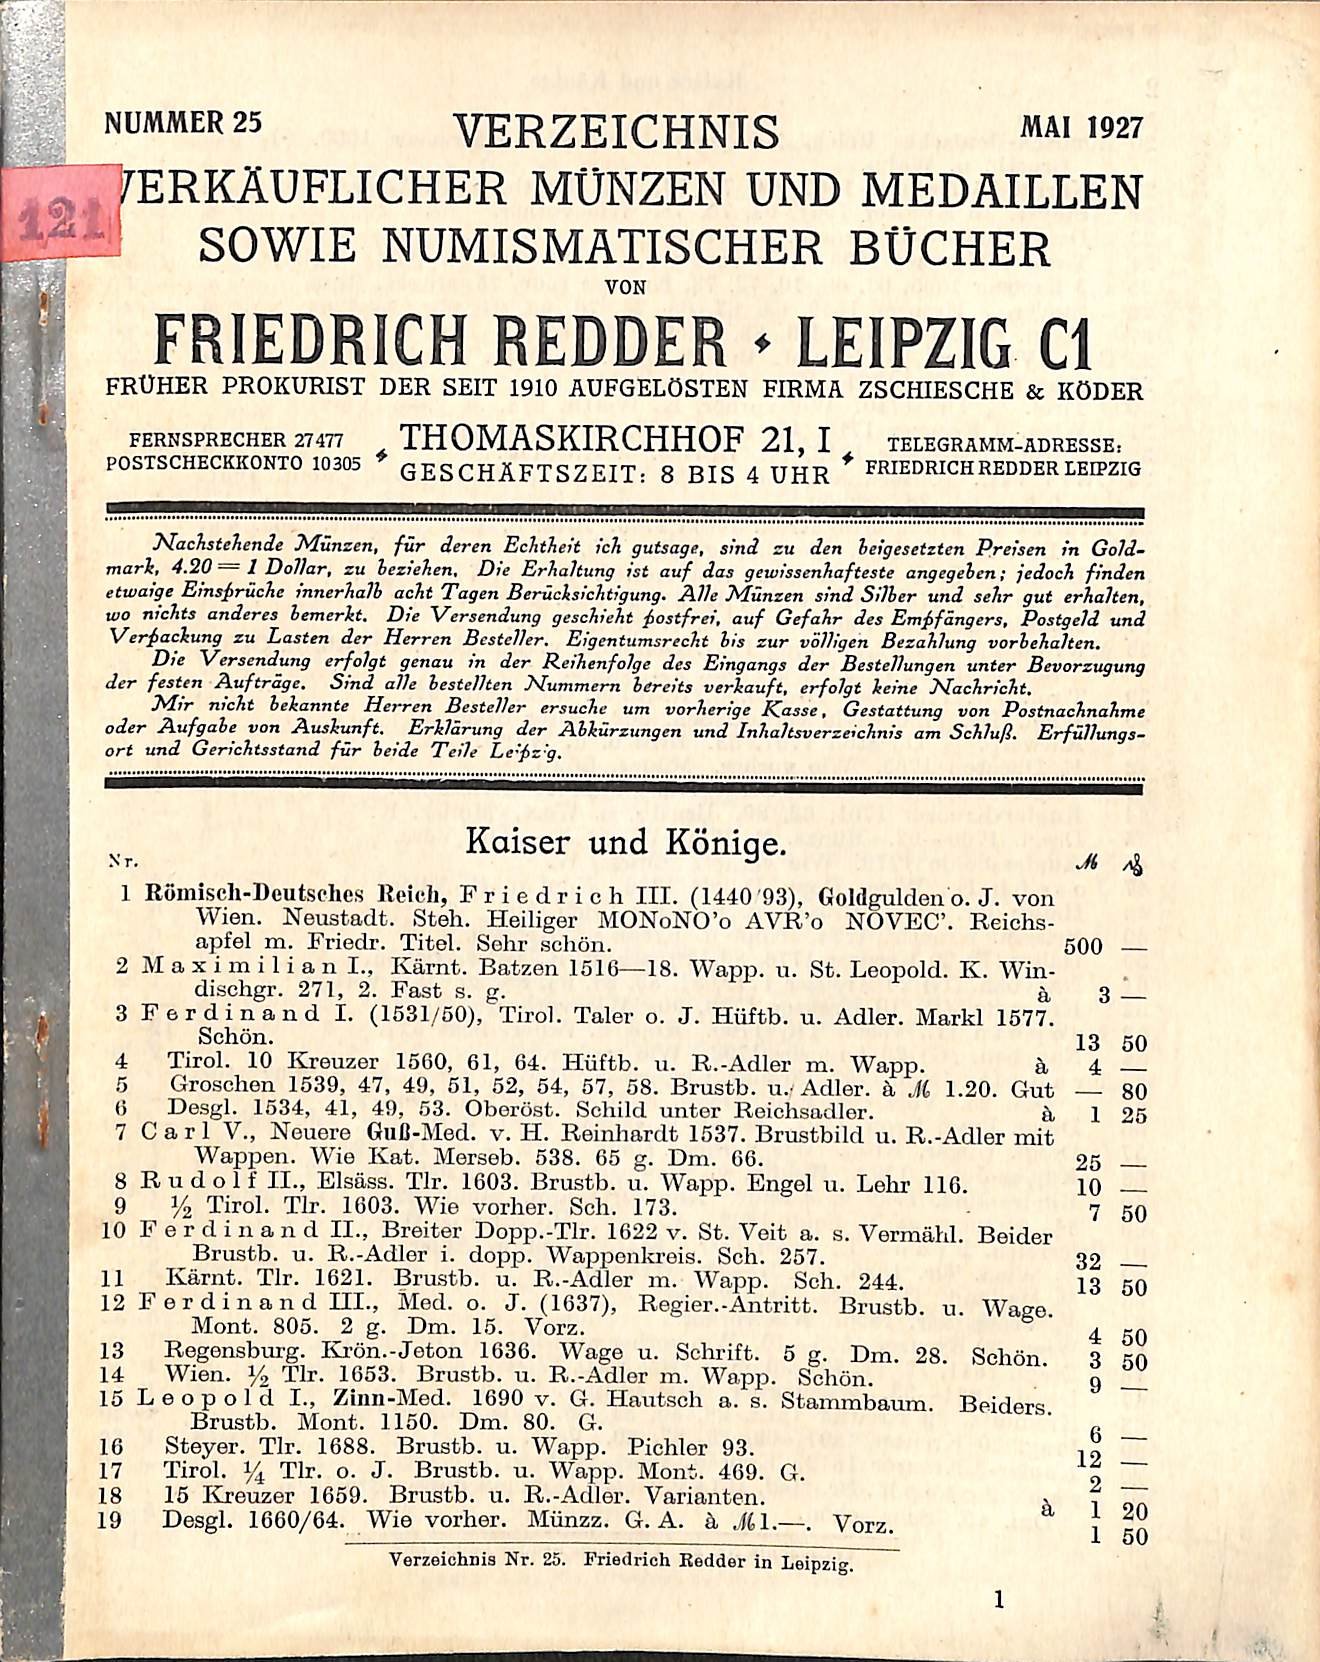 F. Redder, Verzeichnis verkäuflicher Münzen, Medaillen und Bücher Nr. 25 (HEIMATWELTEN Zwönitz - Raritätensammlung Bruno Gebhardt CC BY-NC-SA)